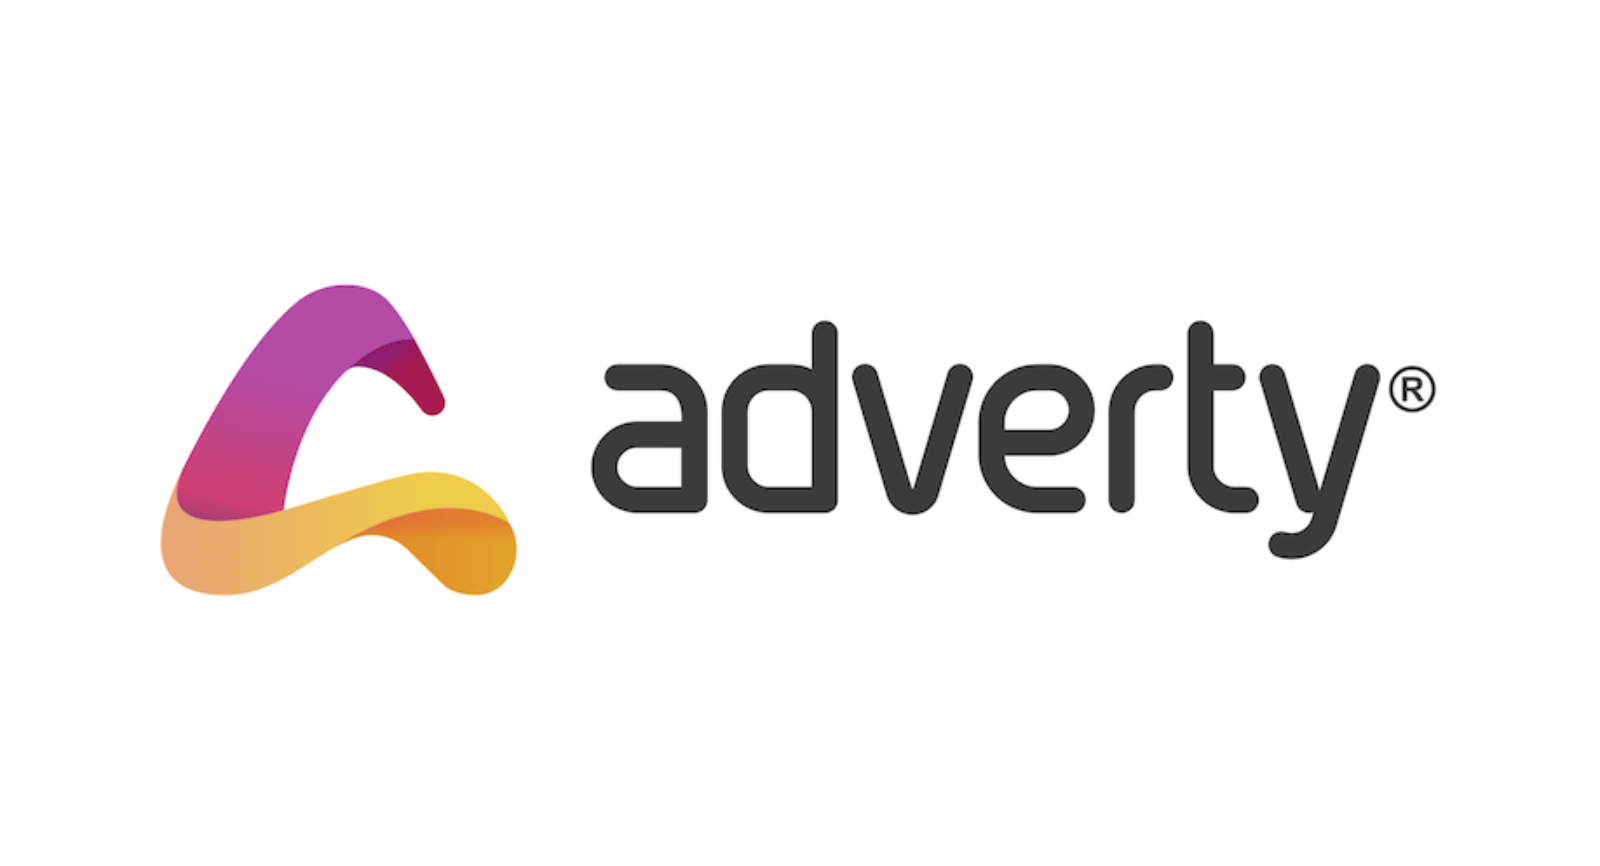 VAST, in game advertising, in play videos, programmatic advertising, programmatic video, adverty, adtech, gaming, digital advertising